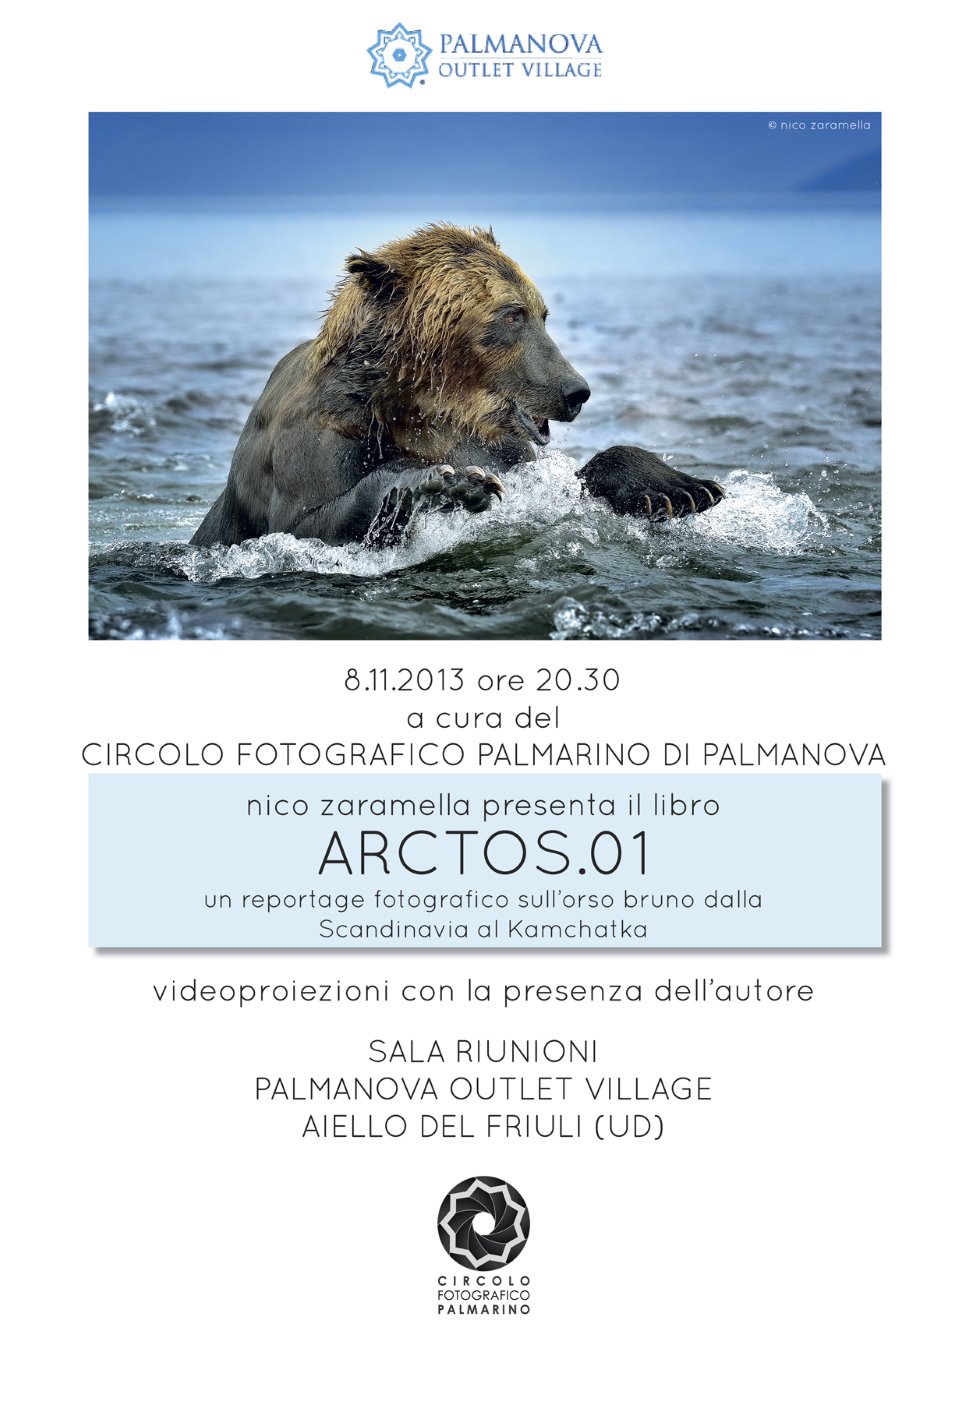 ARCTOS.01 - Gli orsi di Nico Zaramella